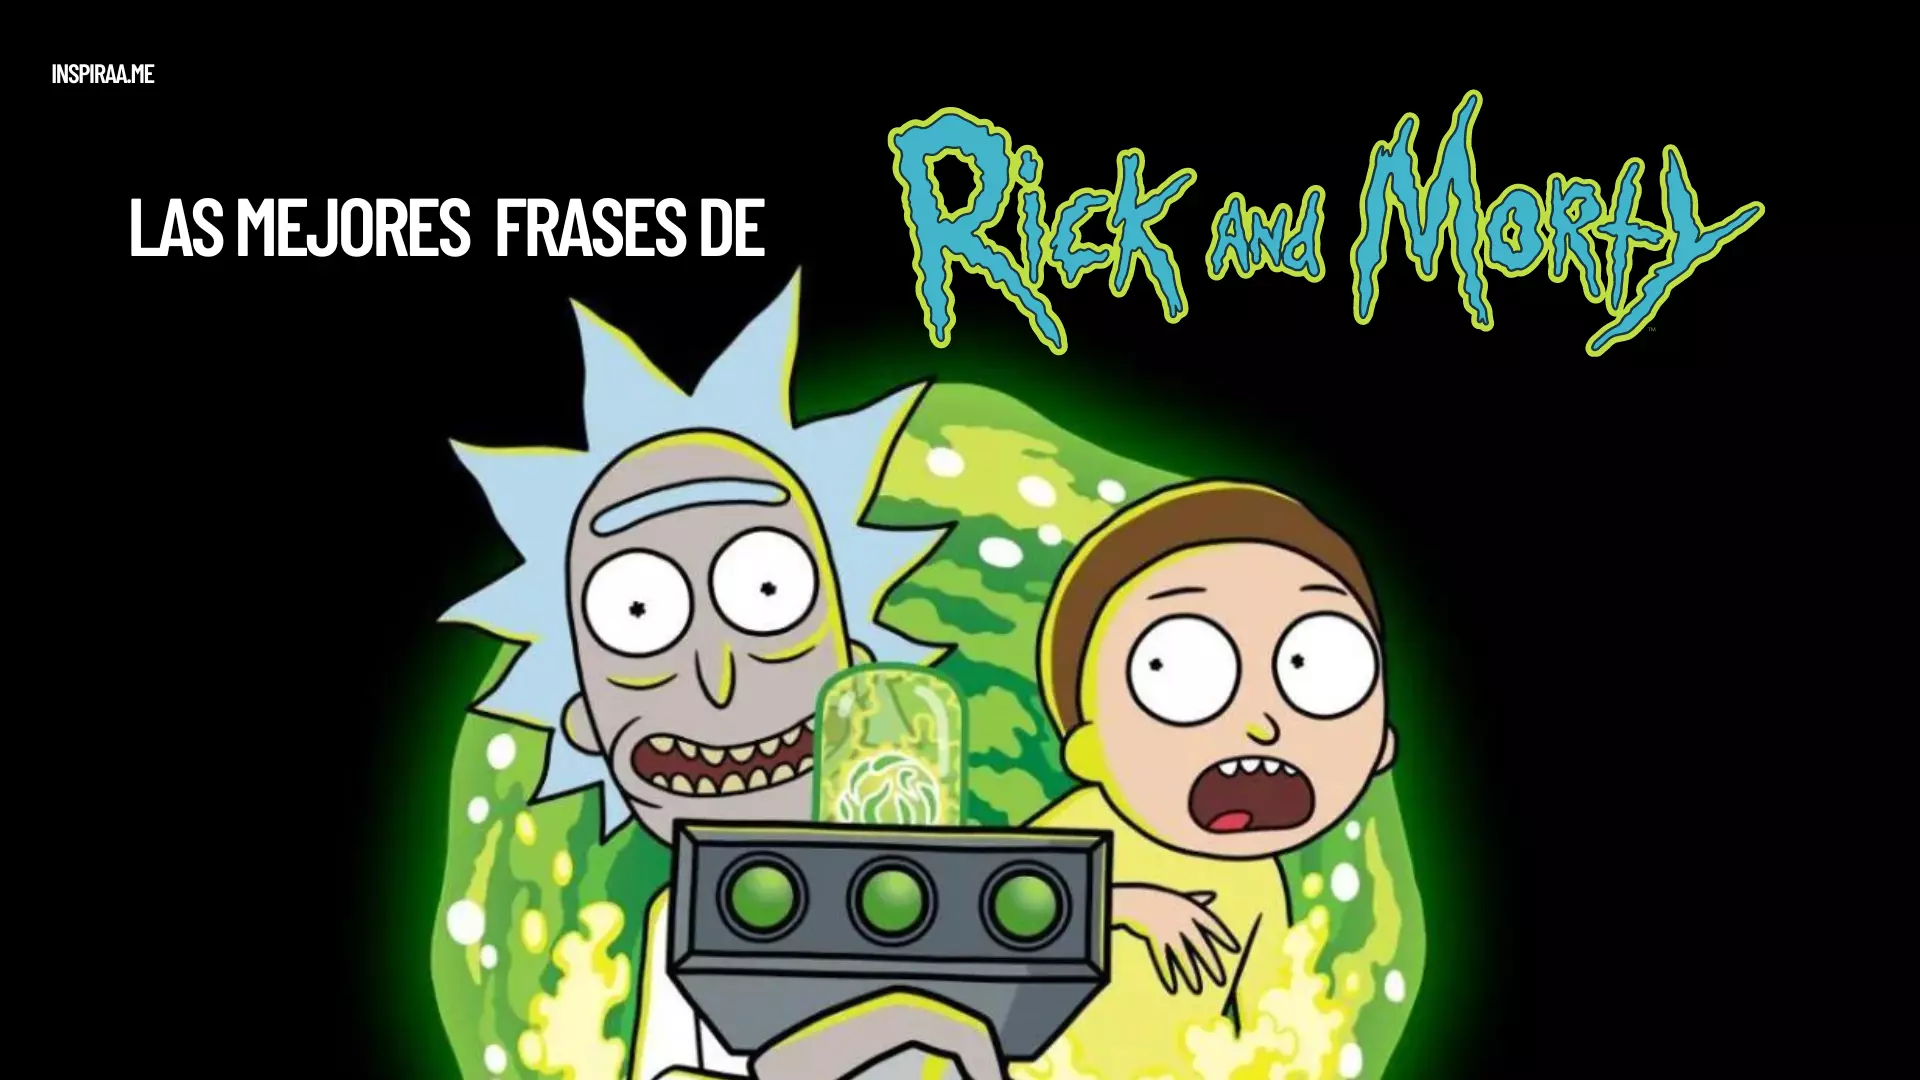 Frases de Rick y Morty sobre el amor la vida la amistad y la familia